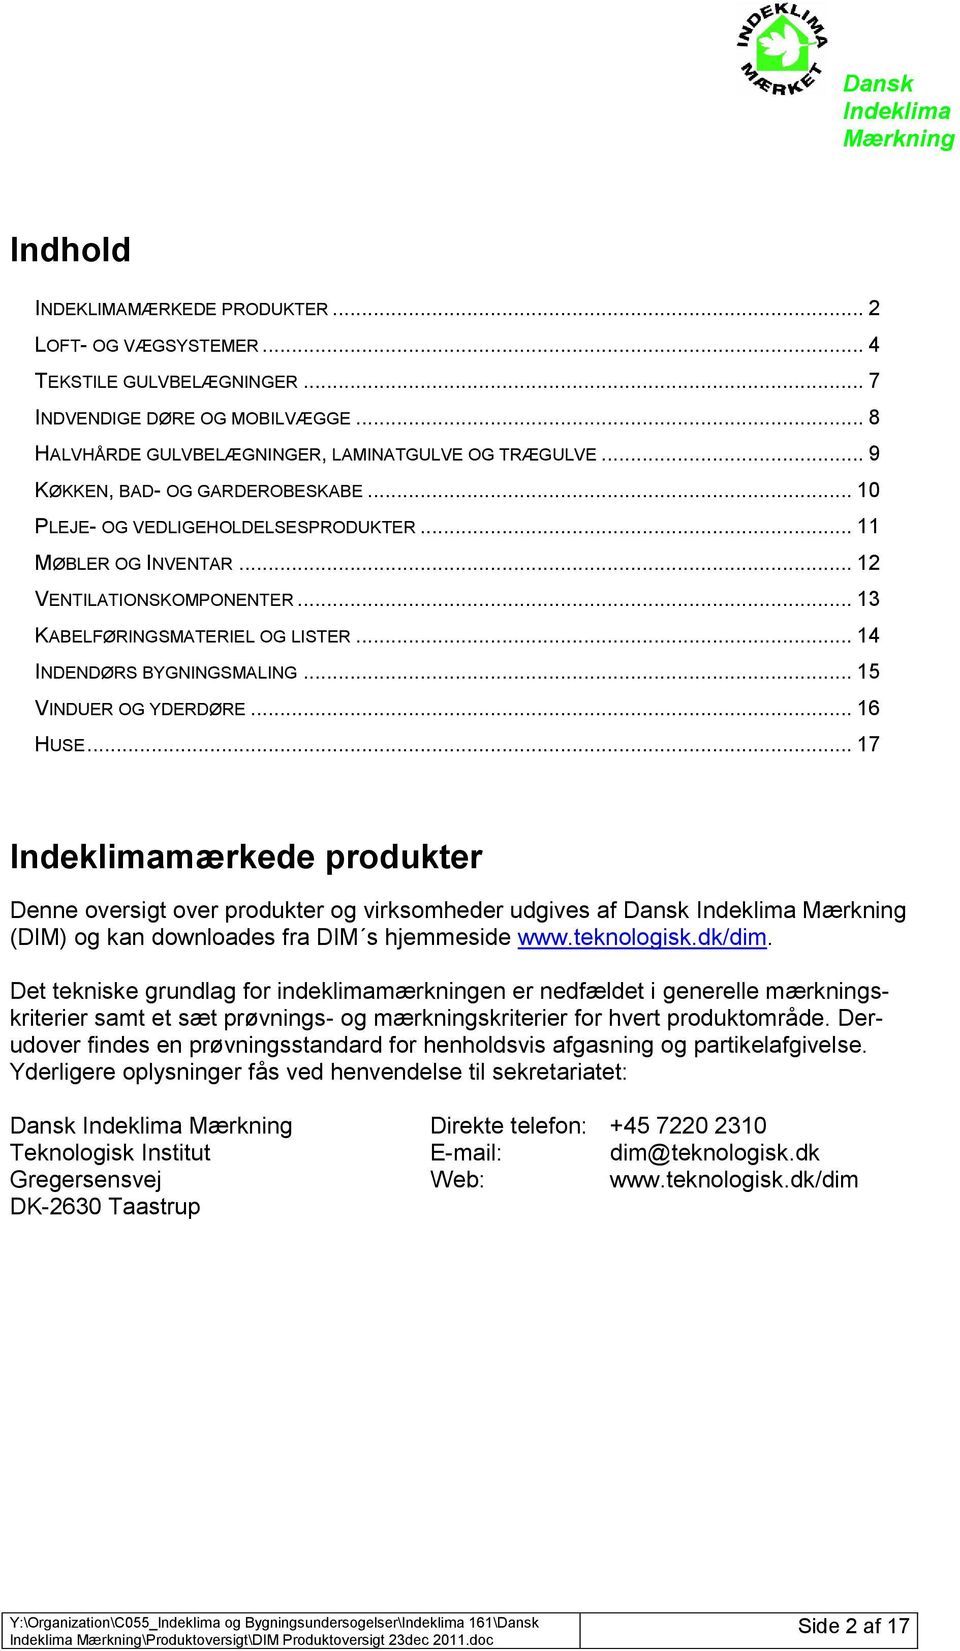 .. 15 VINDUER OG YDERDØRE... 16 HUSE... 17 mærkede produkter Denne oversigt over produkter og virksomheder udgives af Dansk (DIM) og kan downloades fra DIM s hjemmeside www.teknologisk.dk/dim.